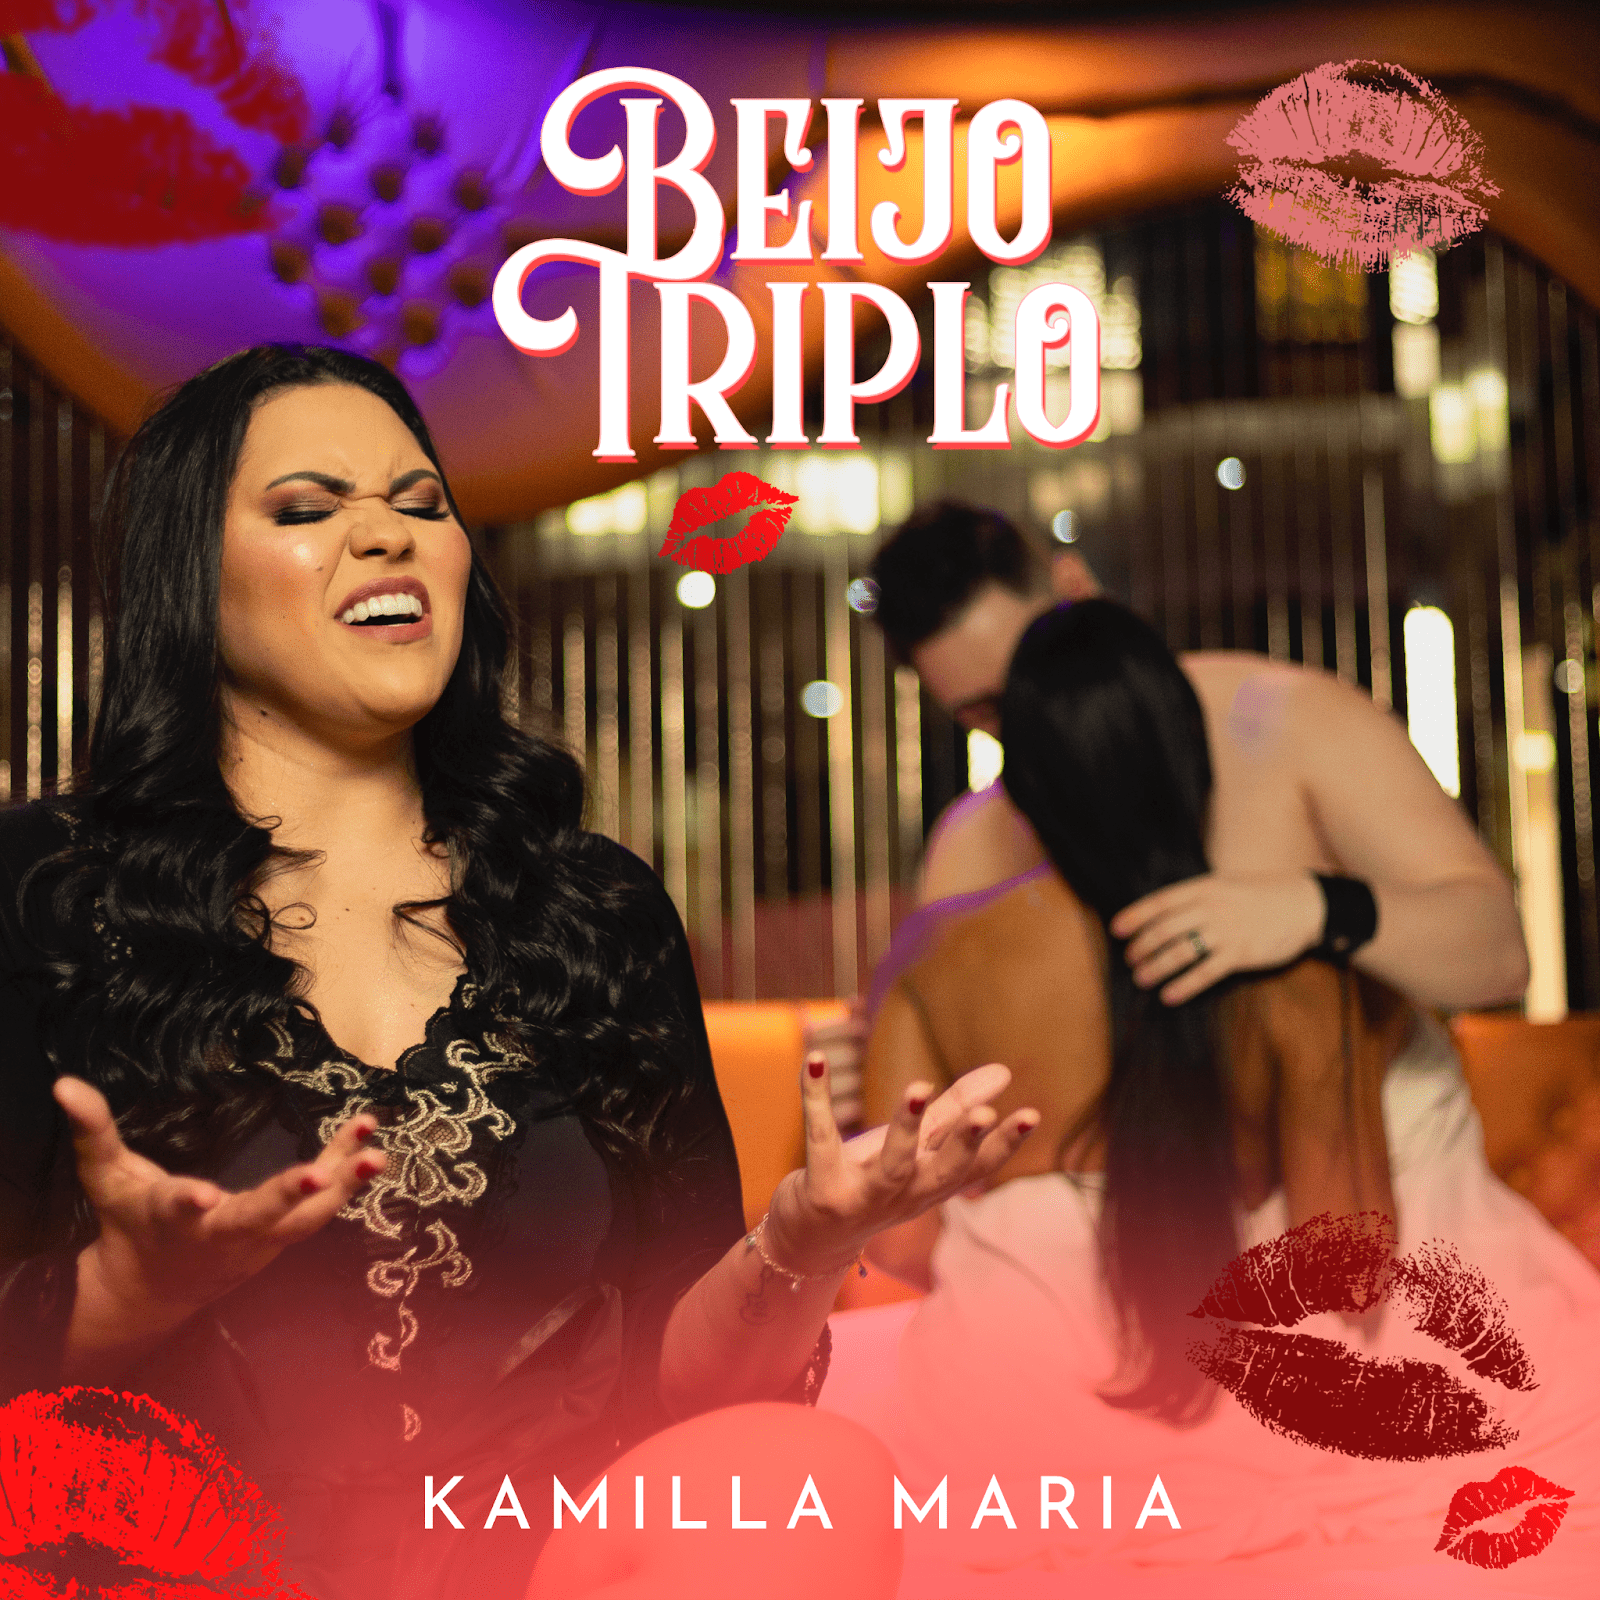 Kamilla Maria Lança “Beijo Triplo” e Encanta Fãs com Sua Nova Canção de Amor